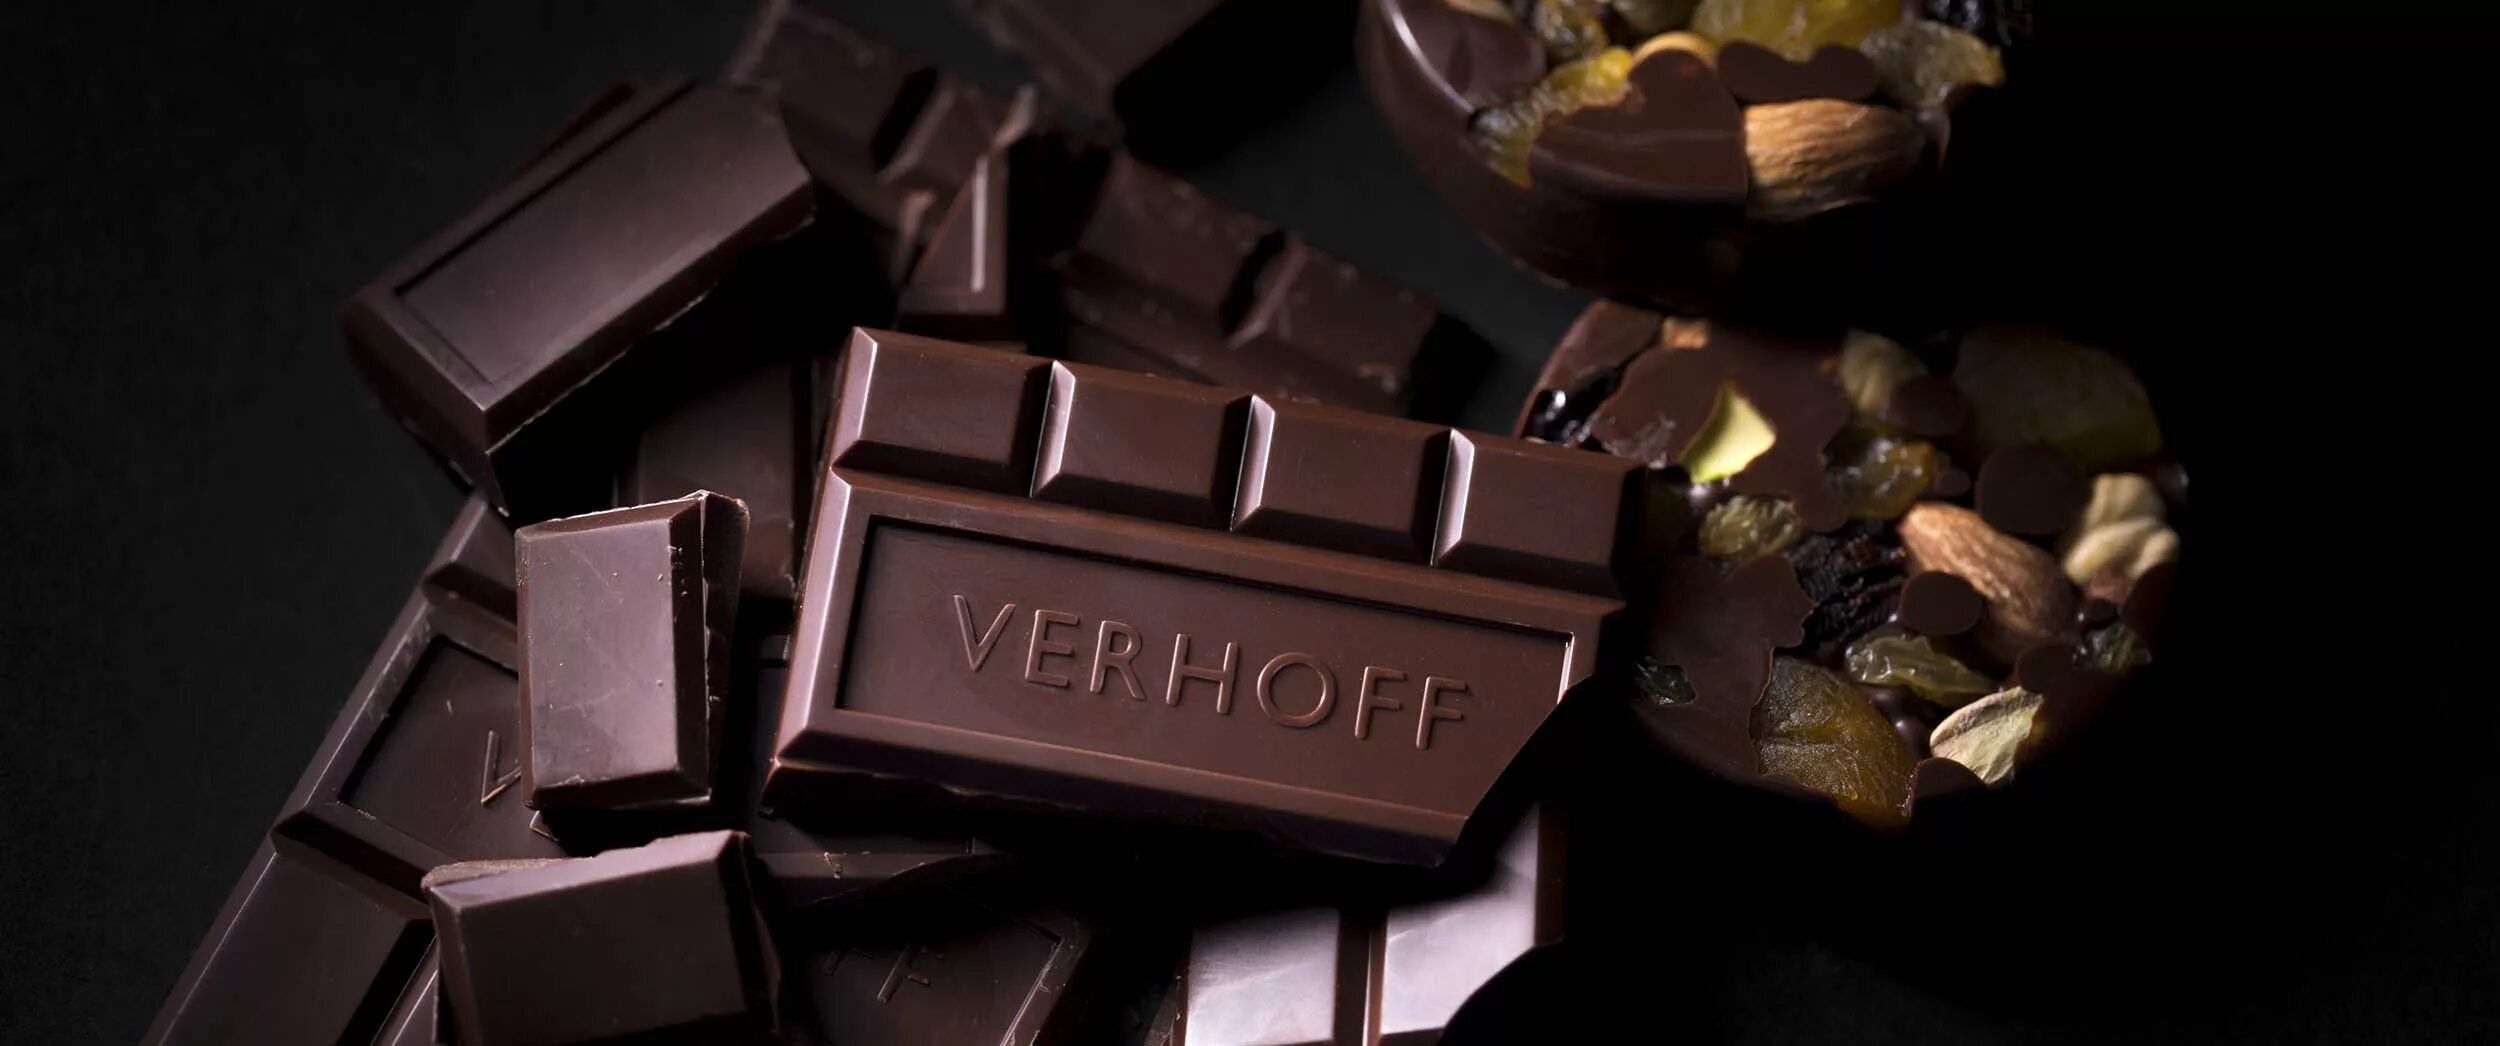 Шоколадки производители. Верхофф шоколад. Verhoff шоколад Саратов. Плитка шоколада. Шоколадная плитка.